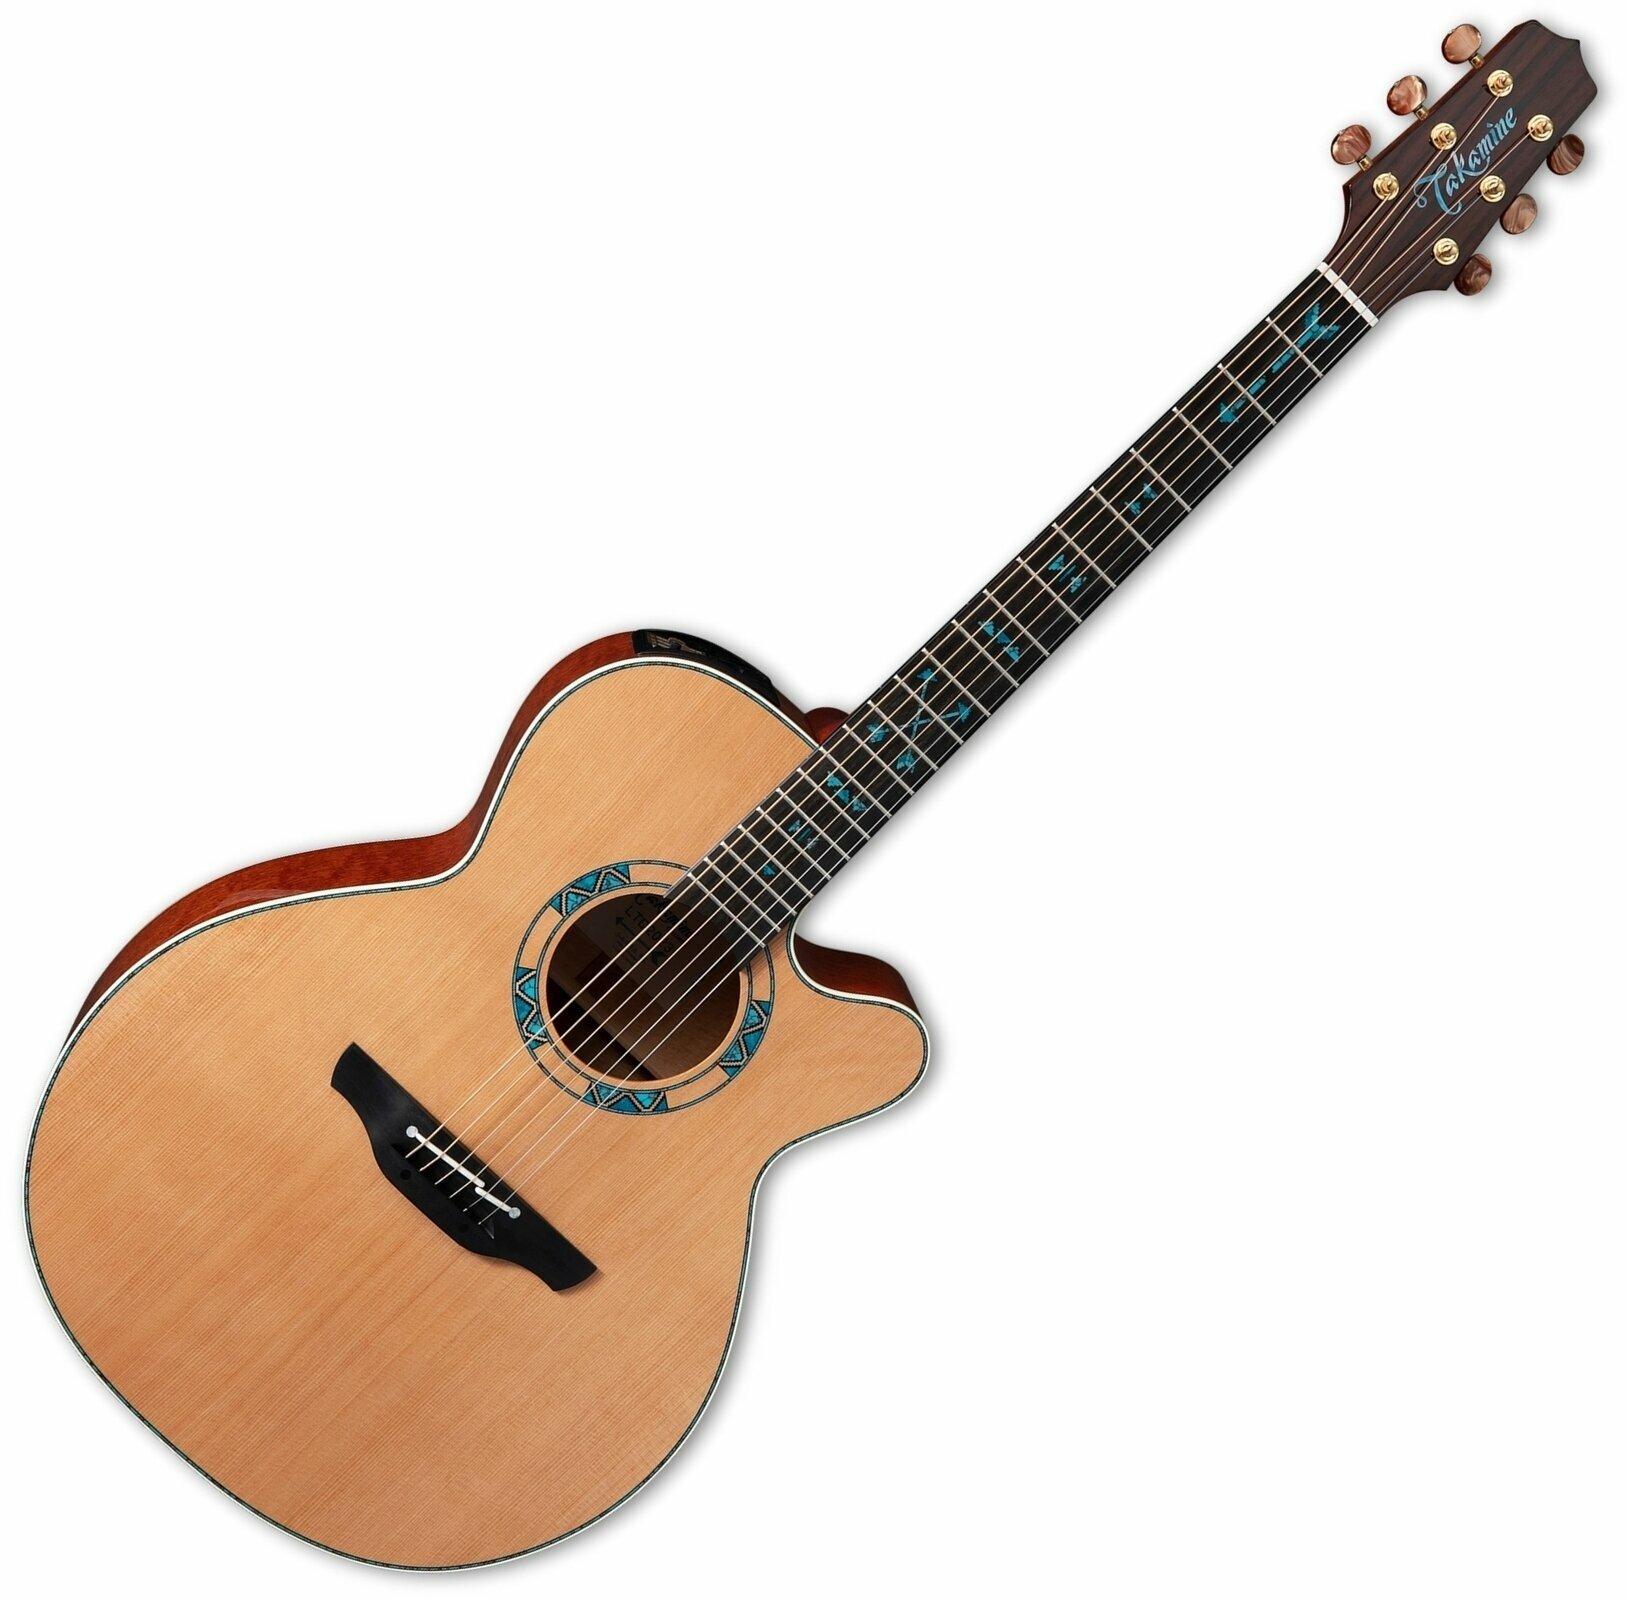 Ηλεκτροακουστική Κιθάρα Jumbo Takamine LTD2023 Santa Fe Natural